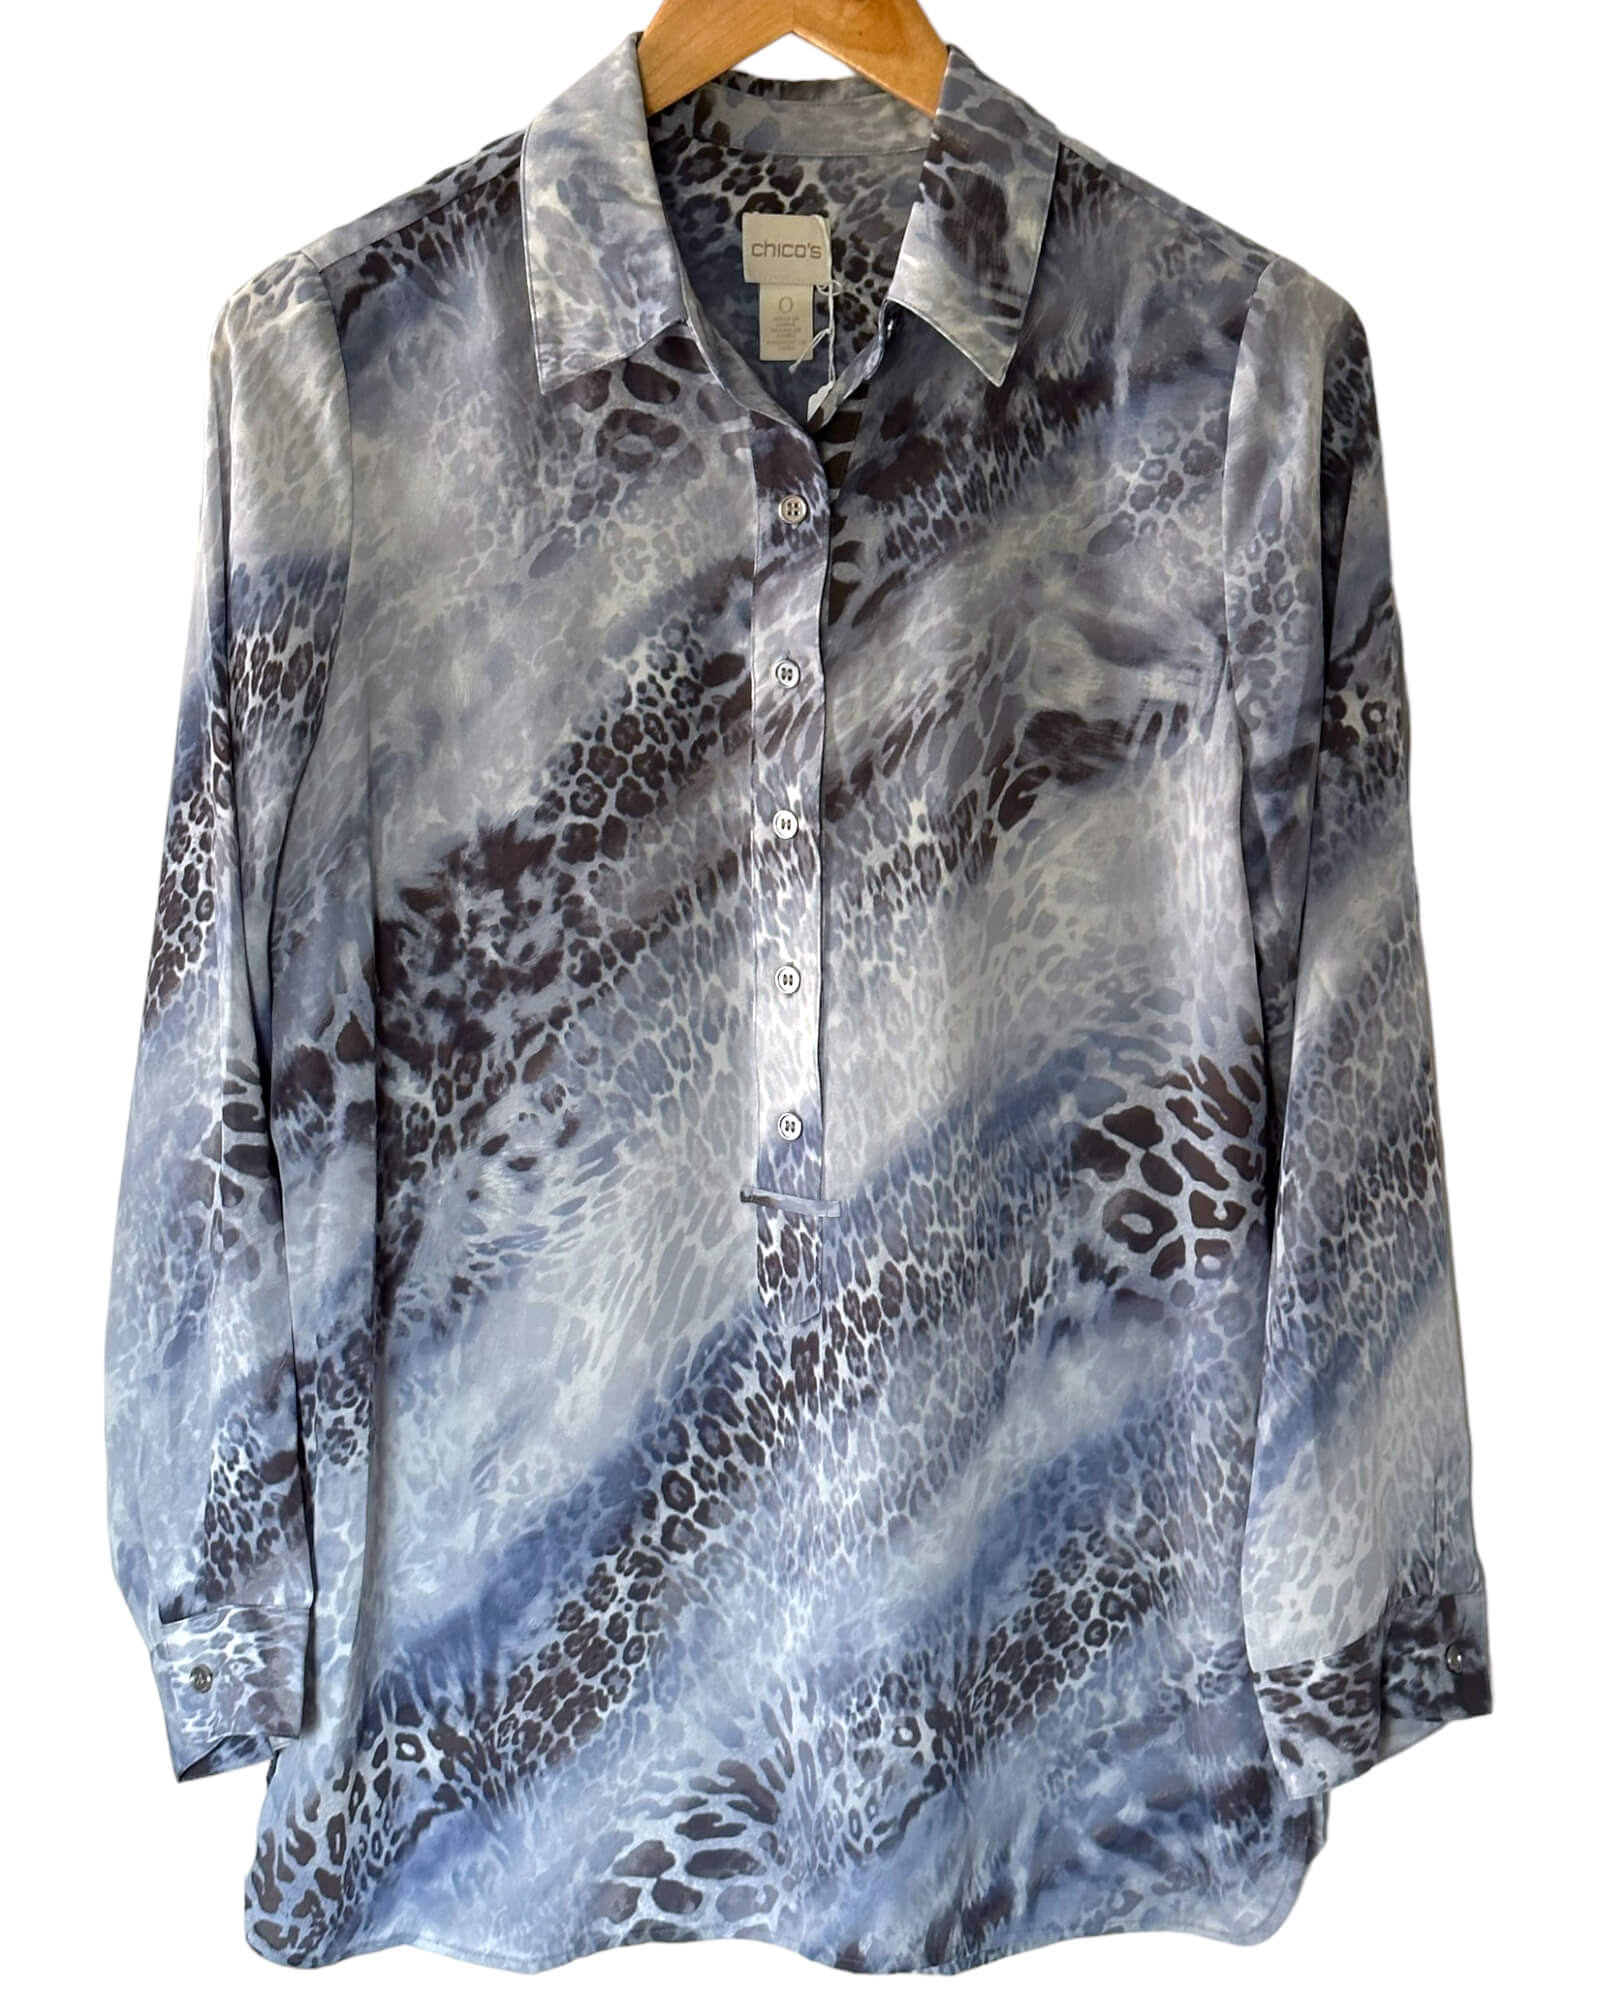 Soft Summer CHICO'S leopard print split-neck blouse